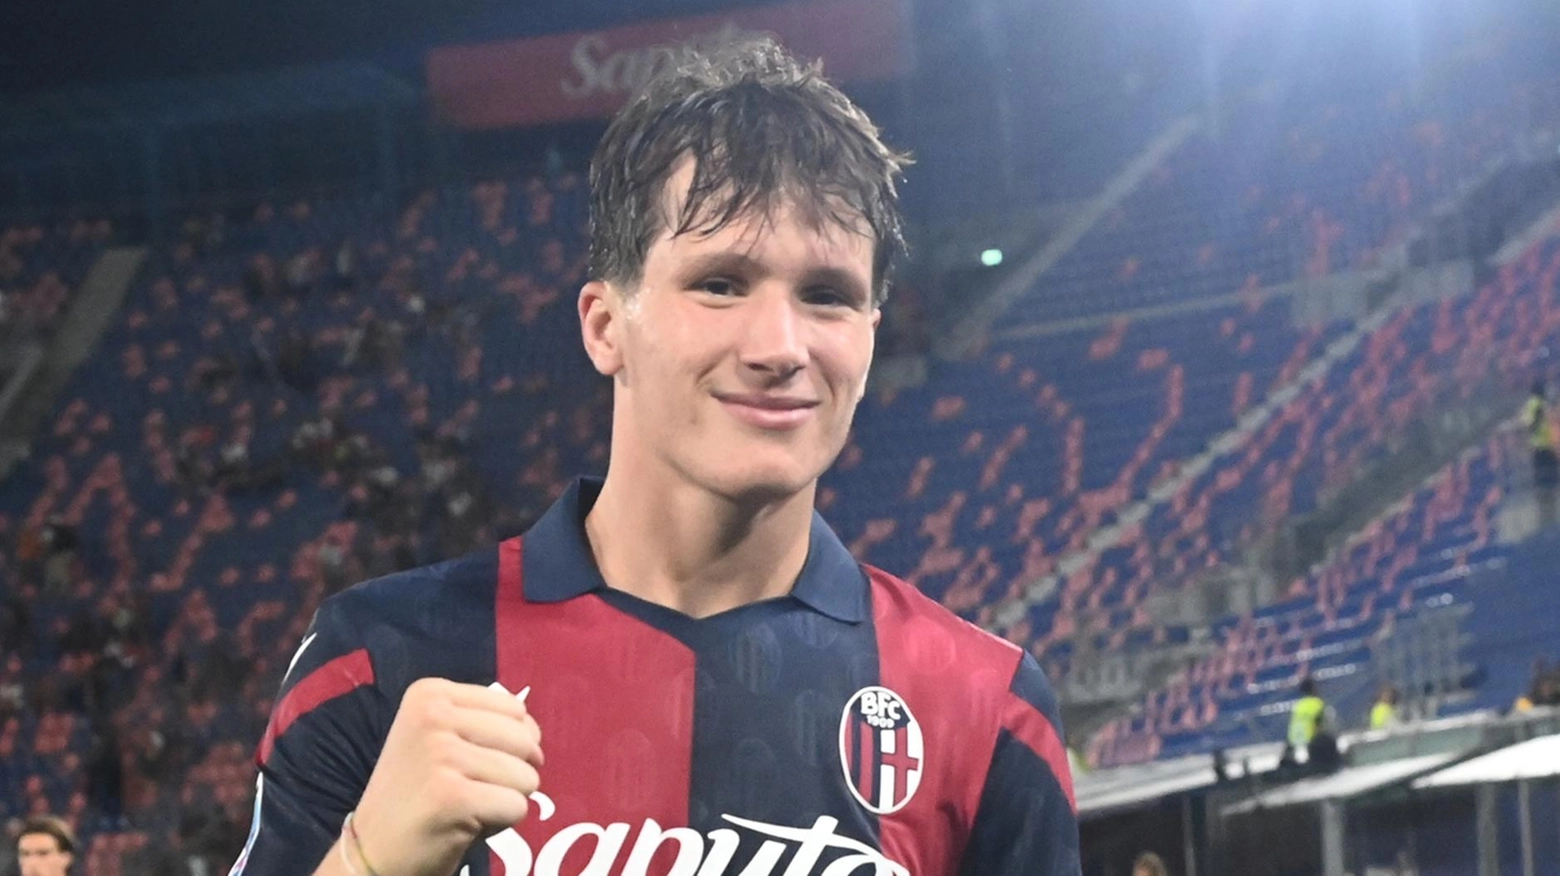 Bologna Il centrocampista con il vizio del gol ha già segnato al Torino. E’ il quarto marcatore della squadra, nonostante un impiego limitato.